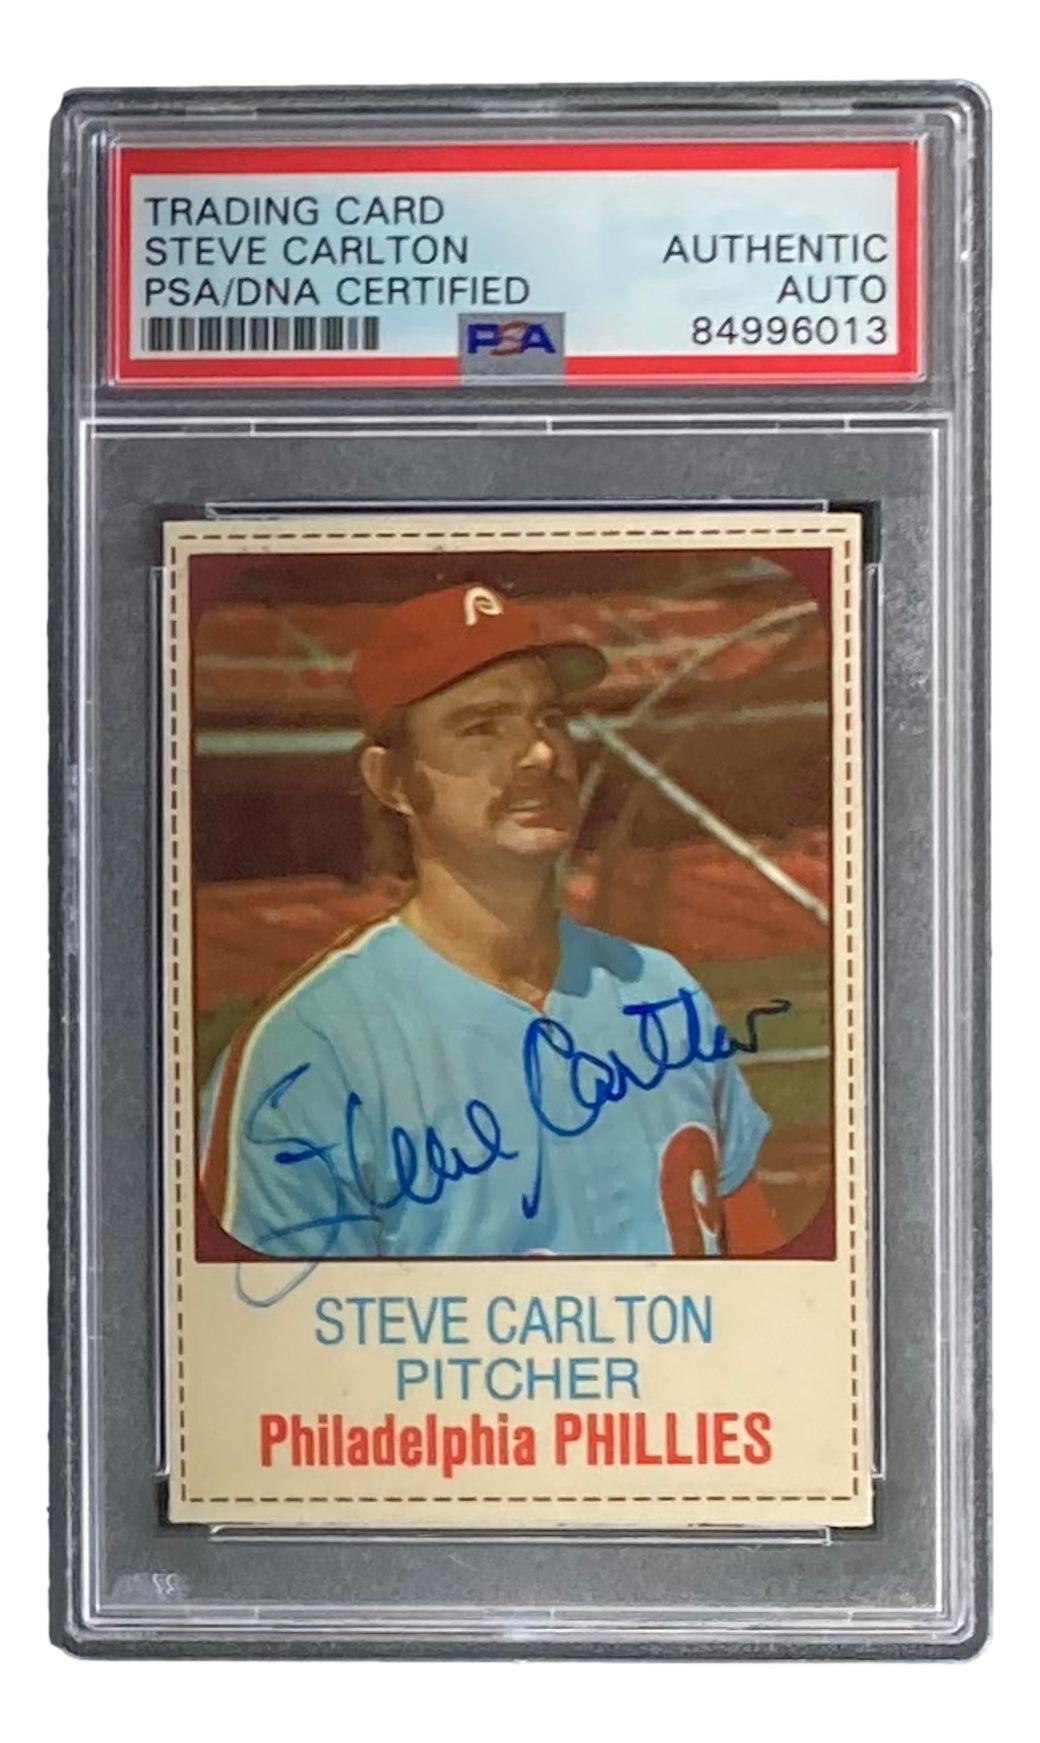 Steve Carlton Signed Philadelphia Phillies 1975 Hostess #63 Trading Card PSA/DNA